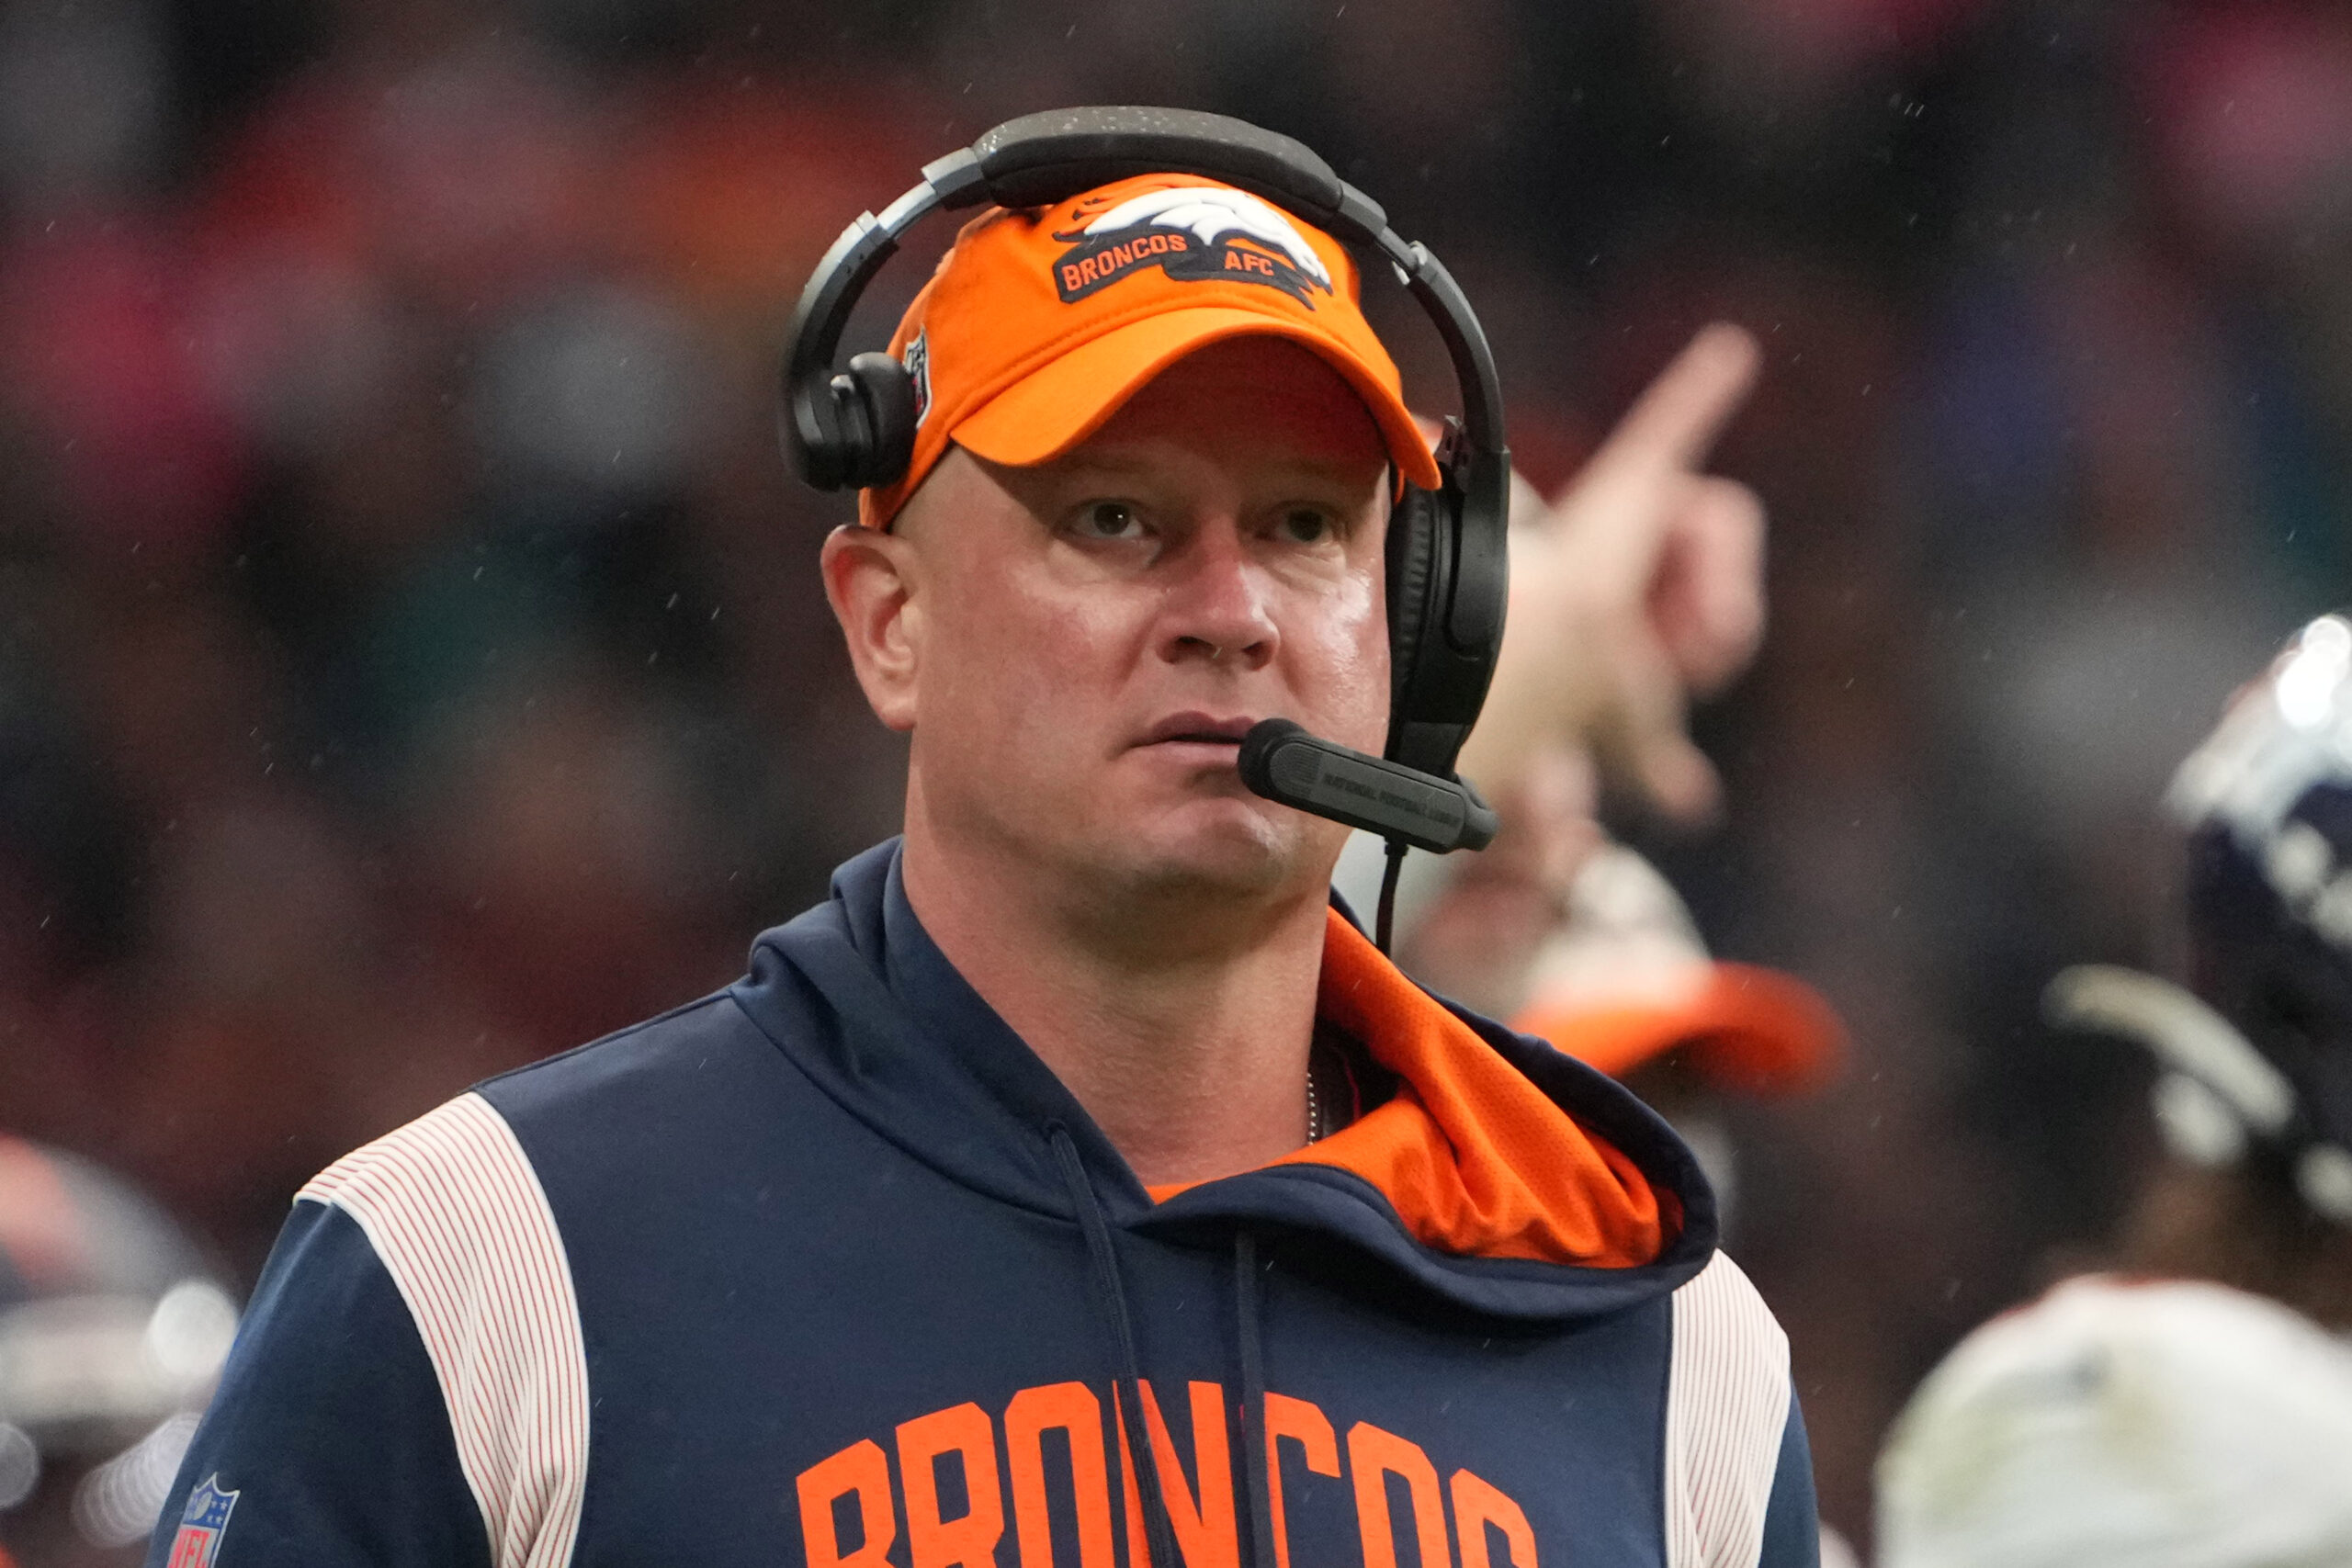 Traits the next Denver Broncos head coach needs to have